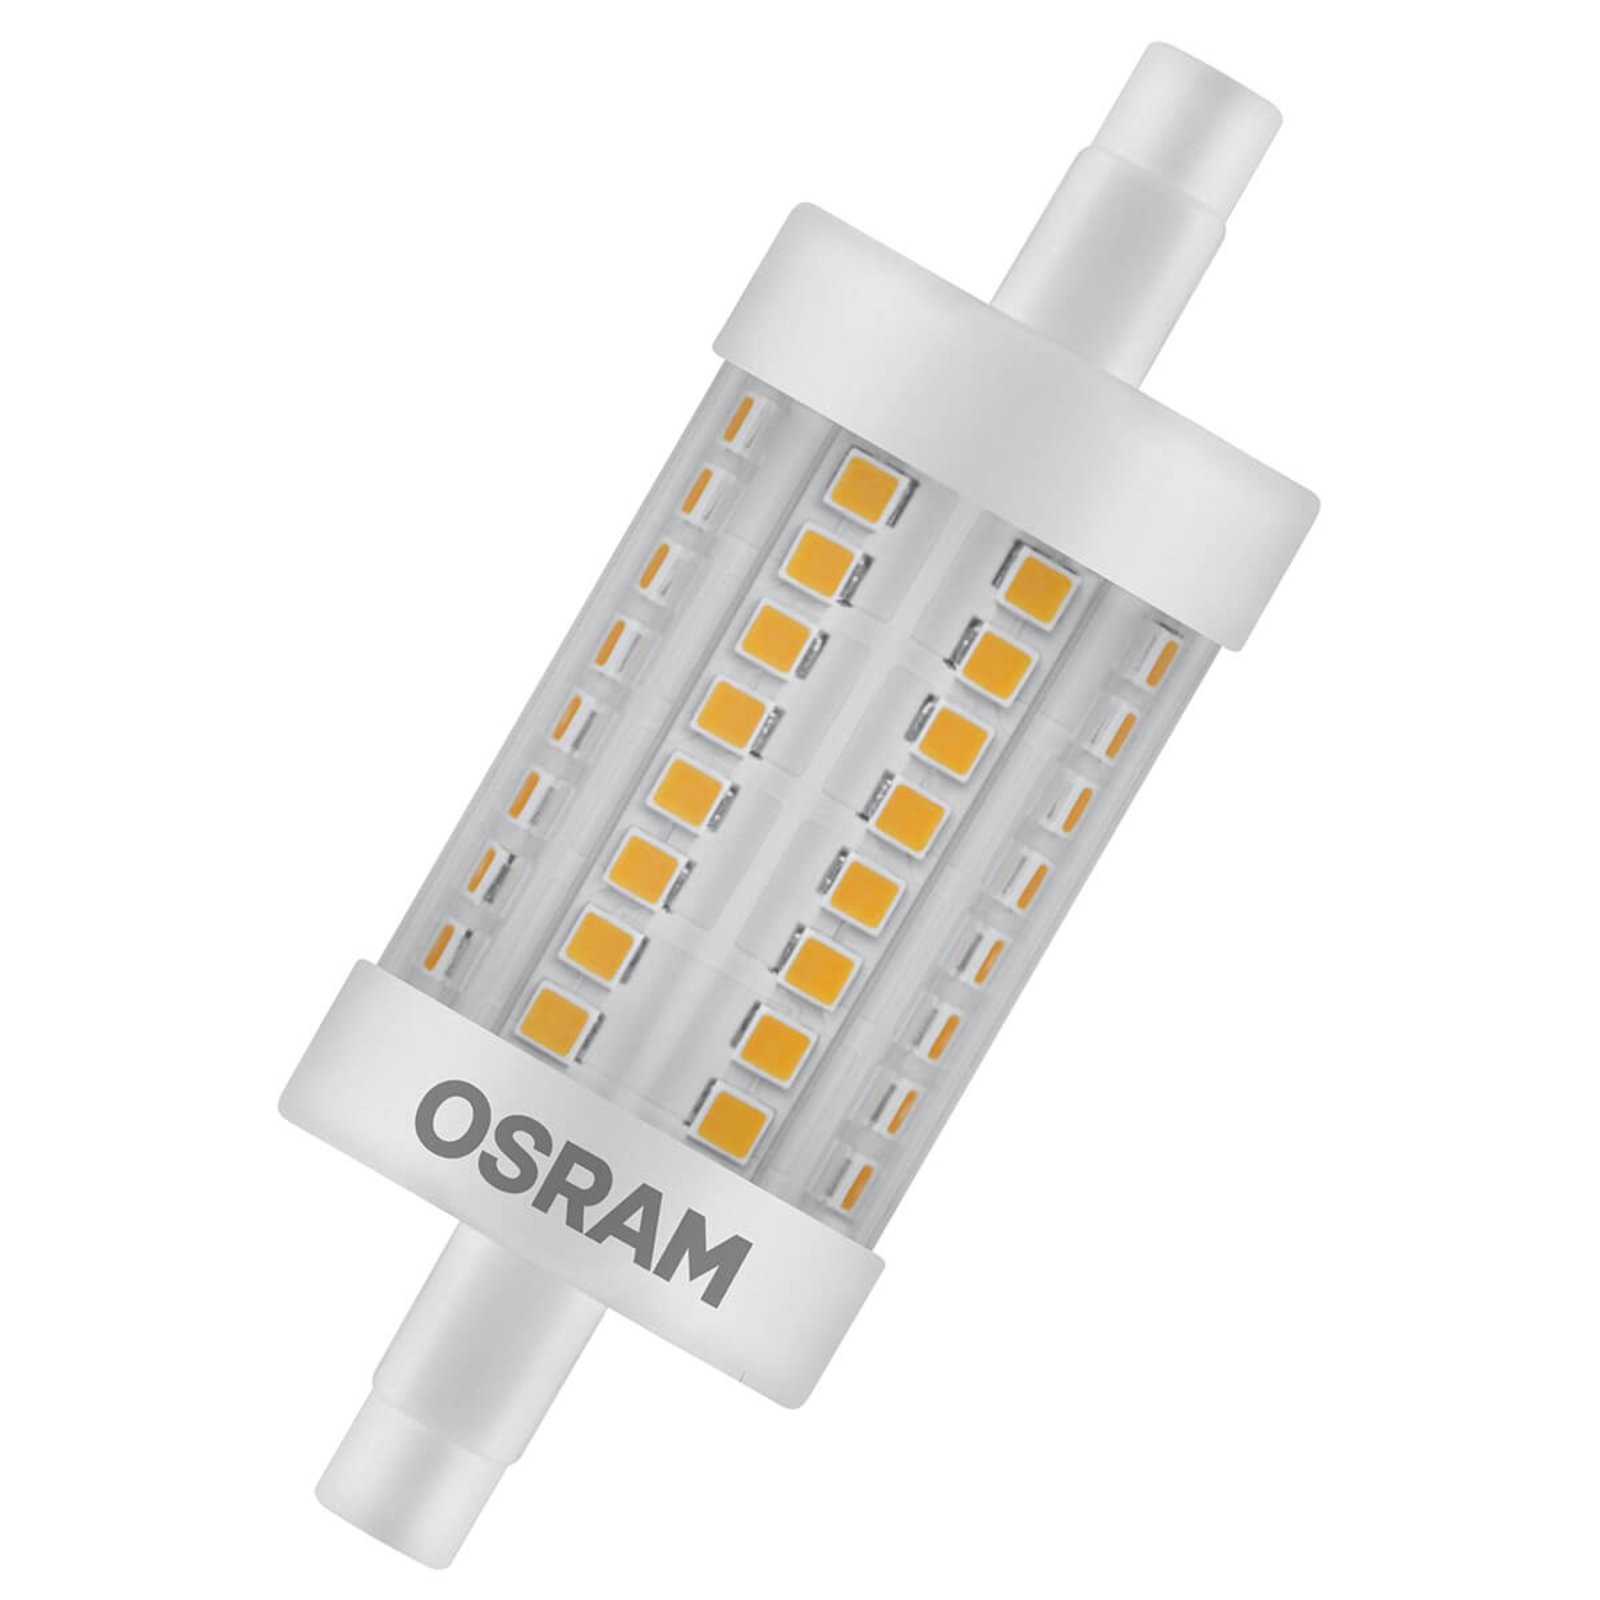 OSRAM LED tyčová žárovka R7s 8,2W teplá bílá 1055